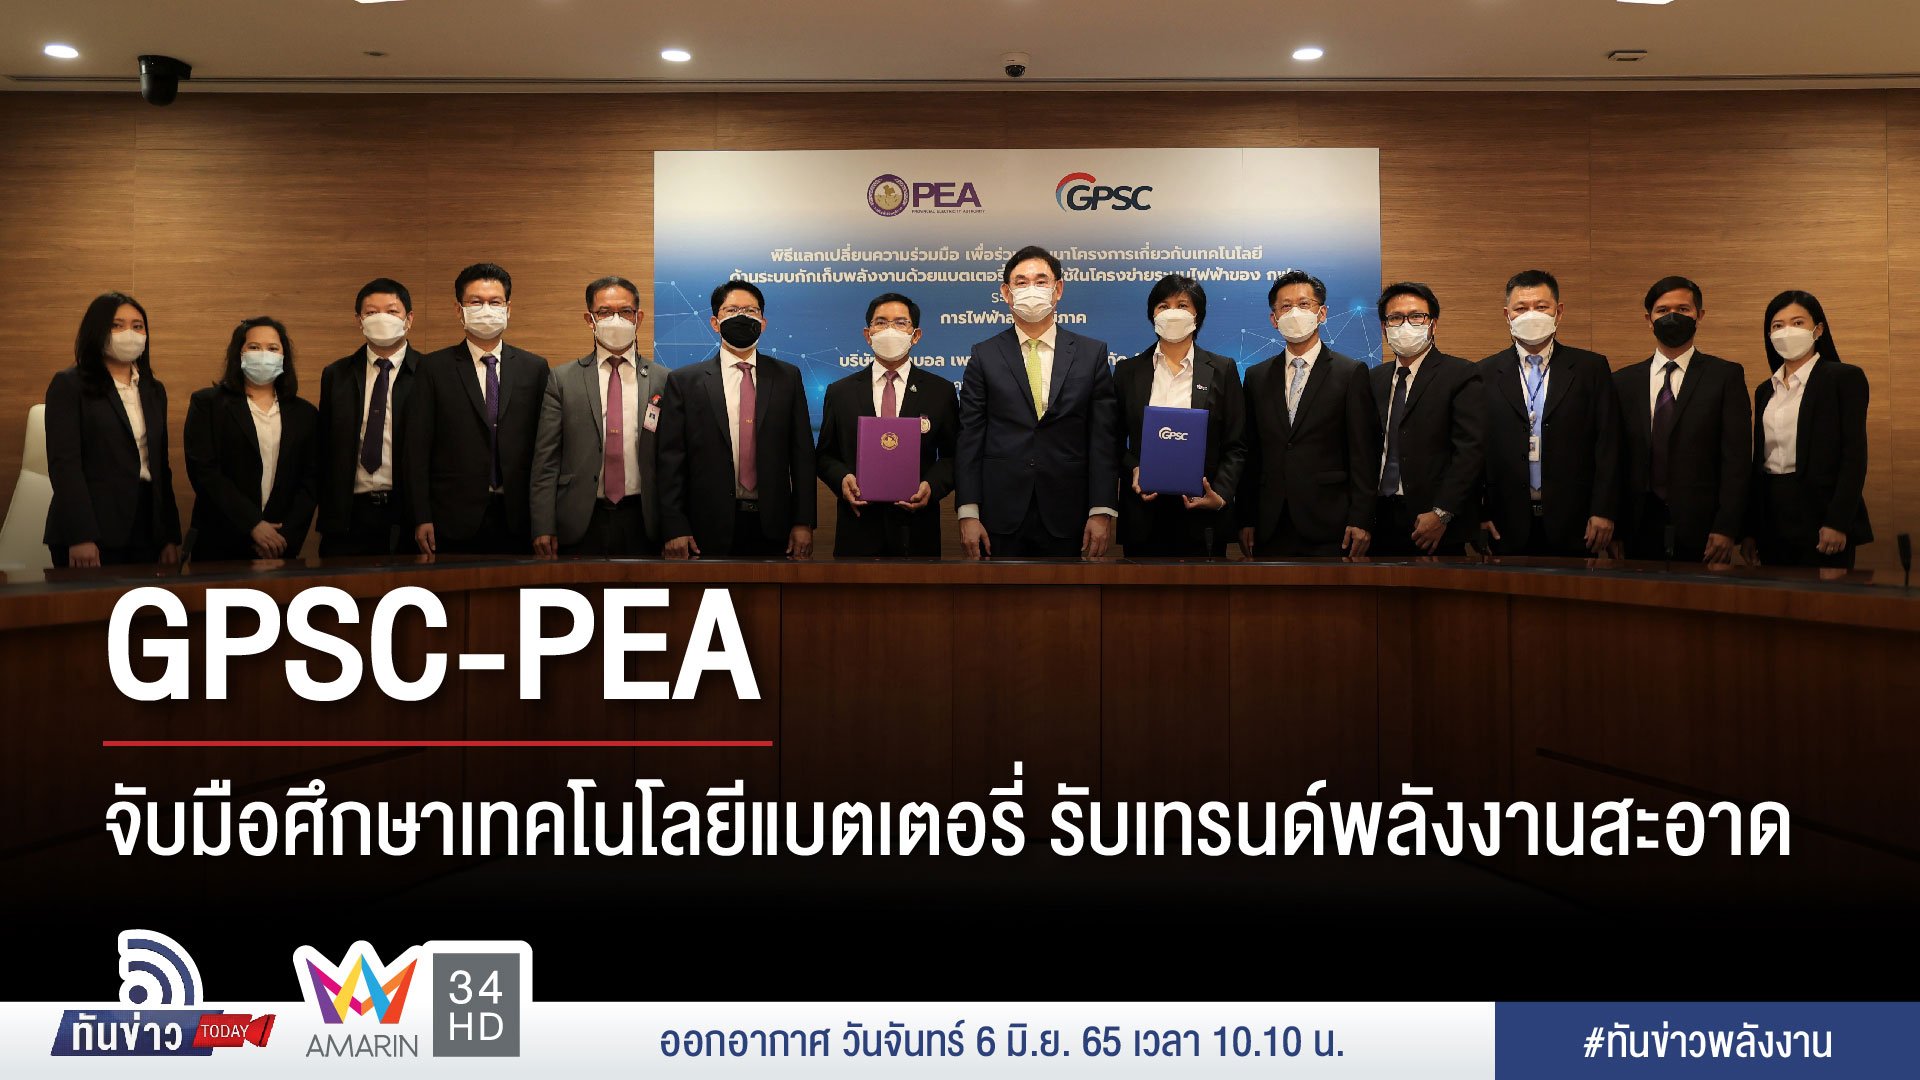 GPSC-PEA จับมือศึกษาเทคโนโลยีแบตเตอรี่รับเทรนด์พลังงานสะอาด